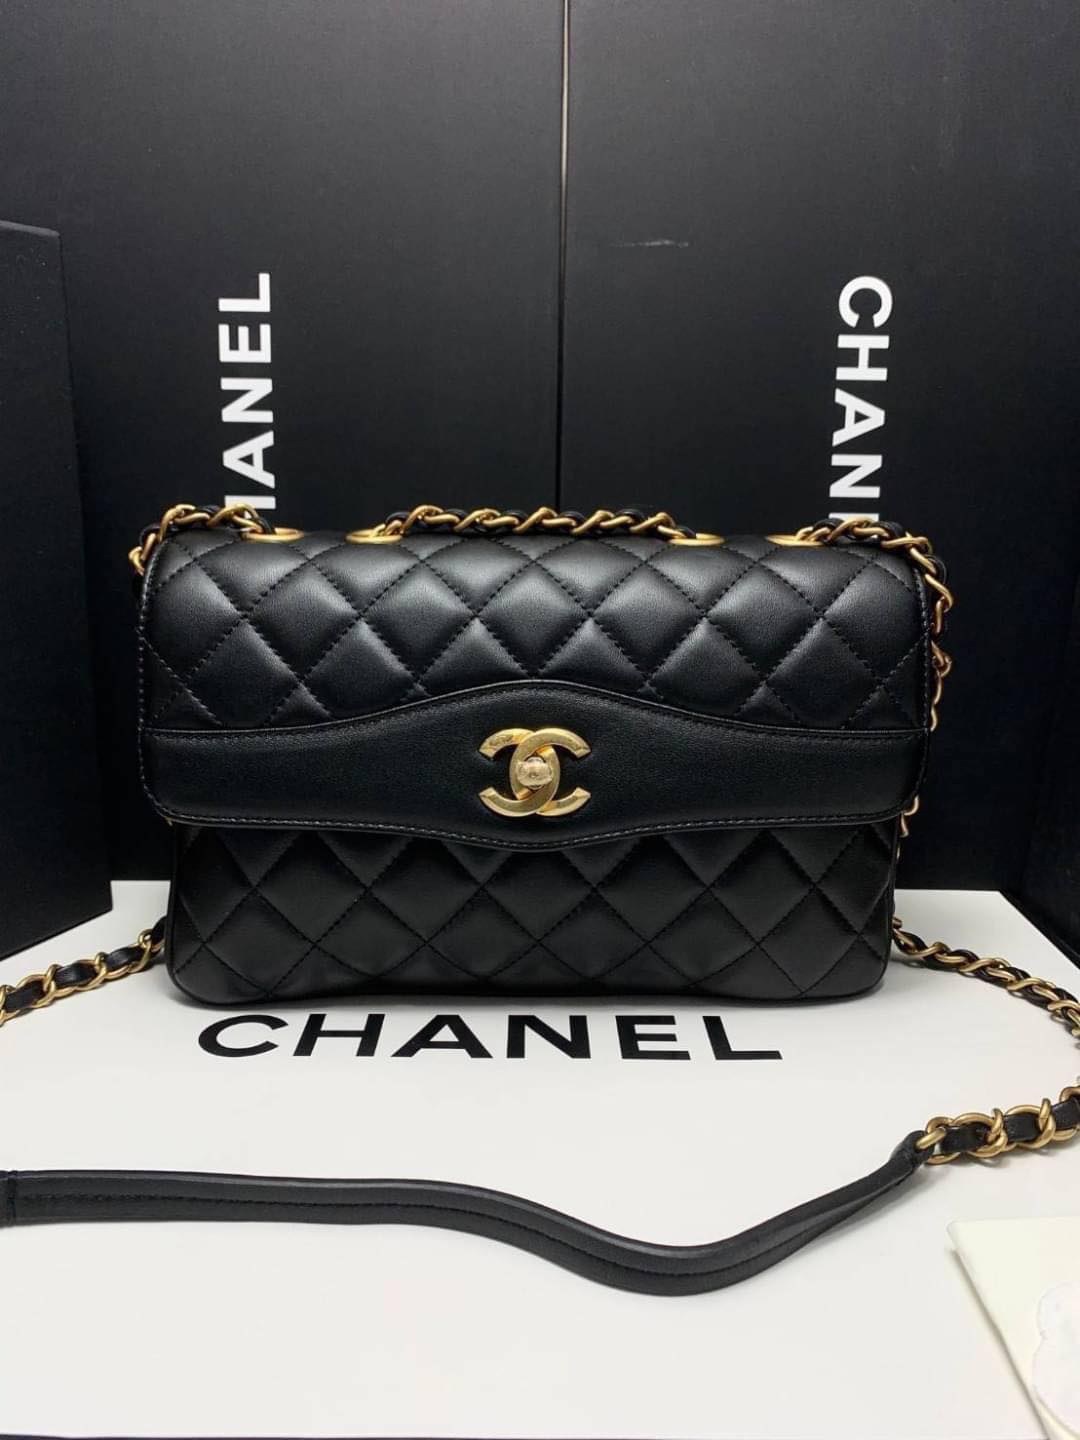 พร้อมส่ง รุ่นใหม่ล่าสุด กระเป๋าสะพาย Chanel หนังแท้ทั้งใบ หนังสวยฟูแน่นเต็มทุกช่อง มีสายสะพายโซ่ รูปที่ 1